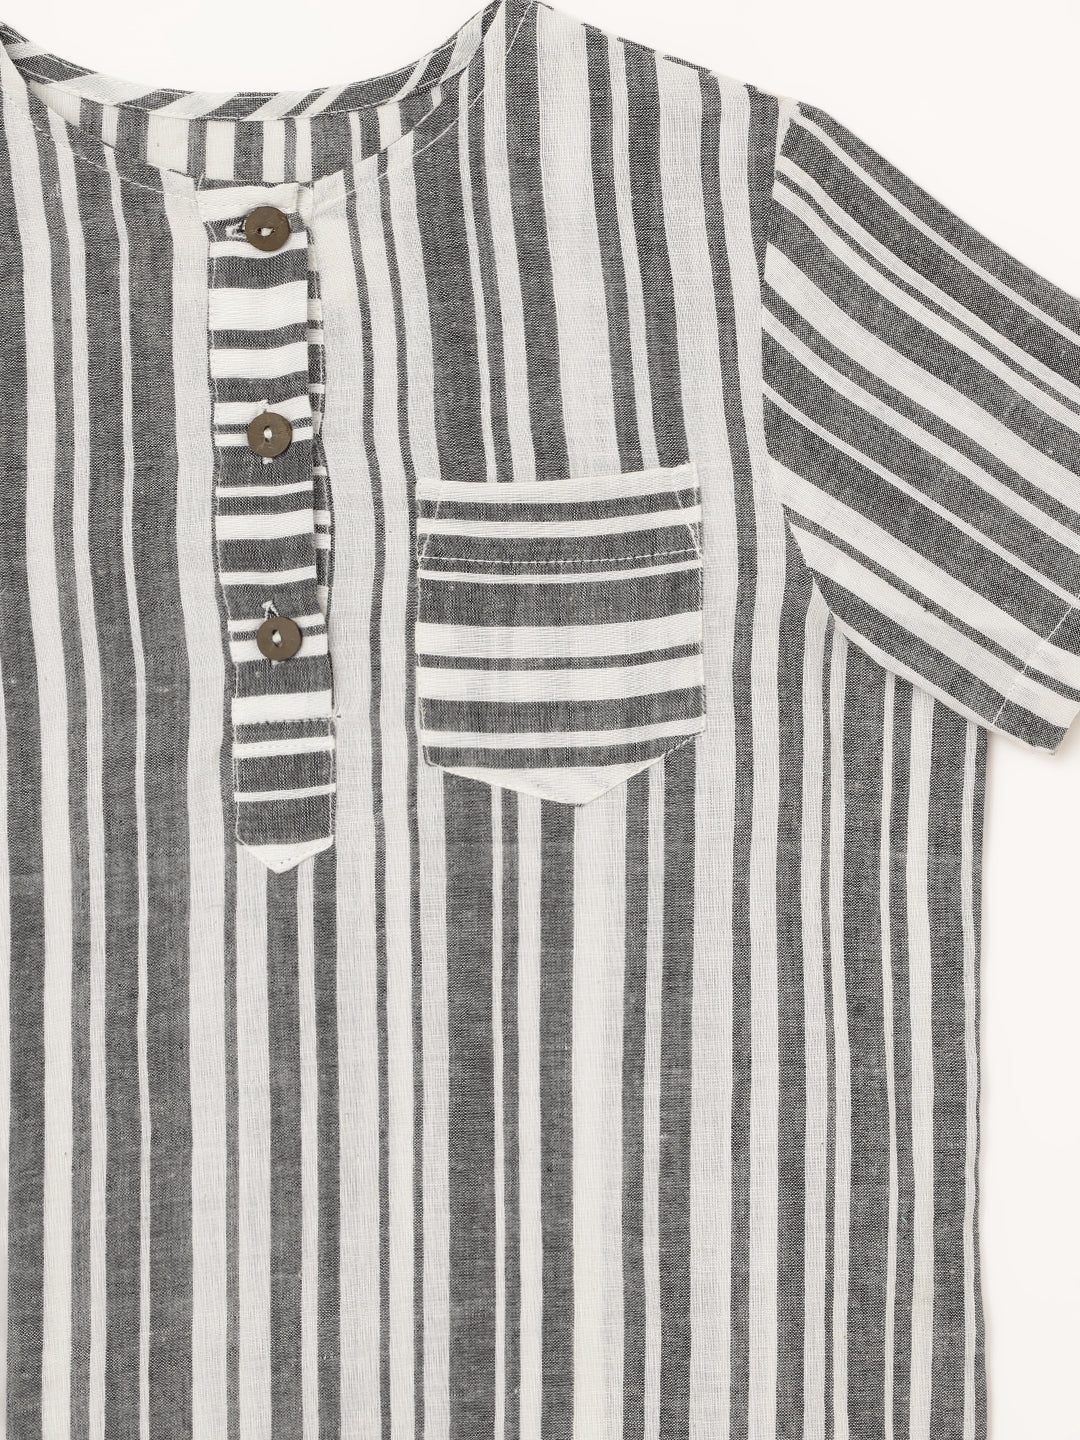 Boys Handloom Cotton Black Stripes Half Sleeves Shirt 1 yr to 8 yrs - Close-up